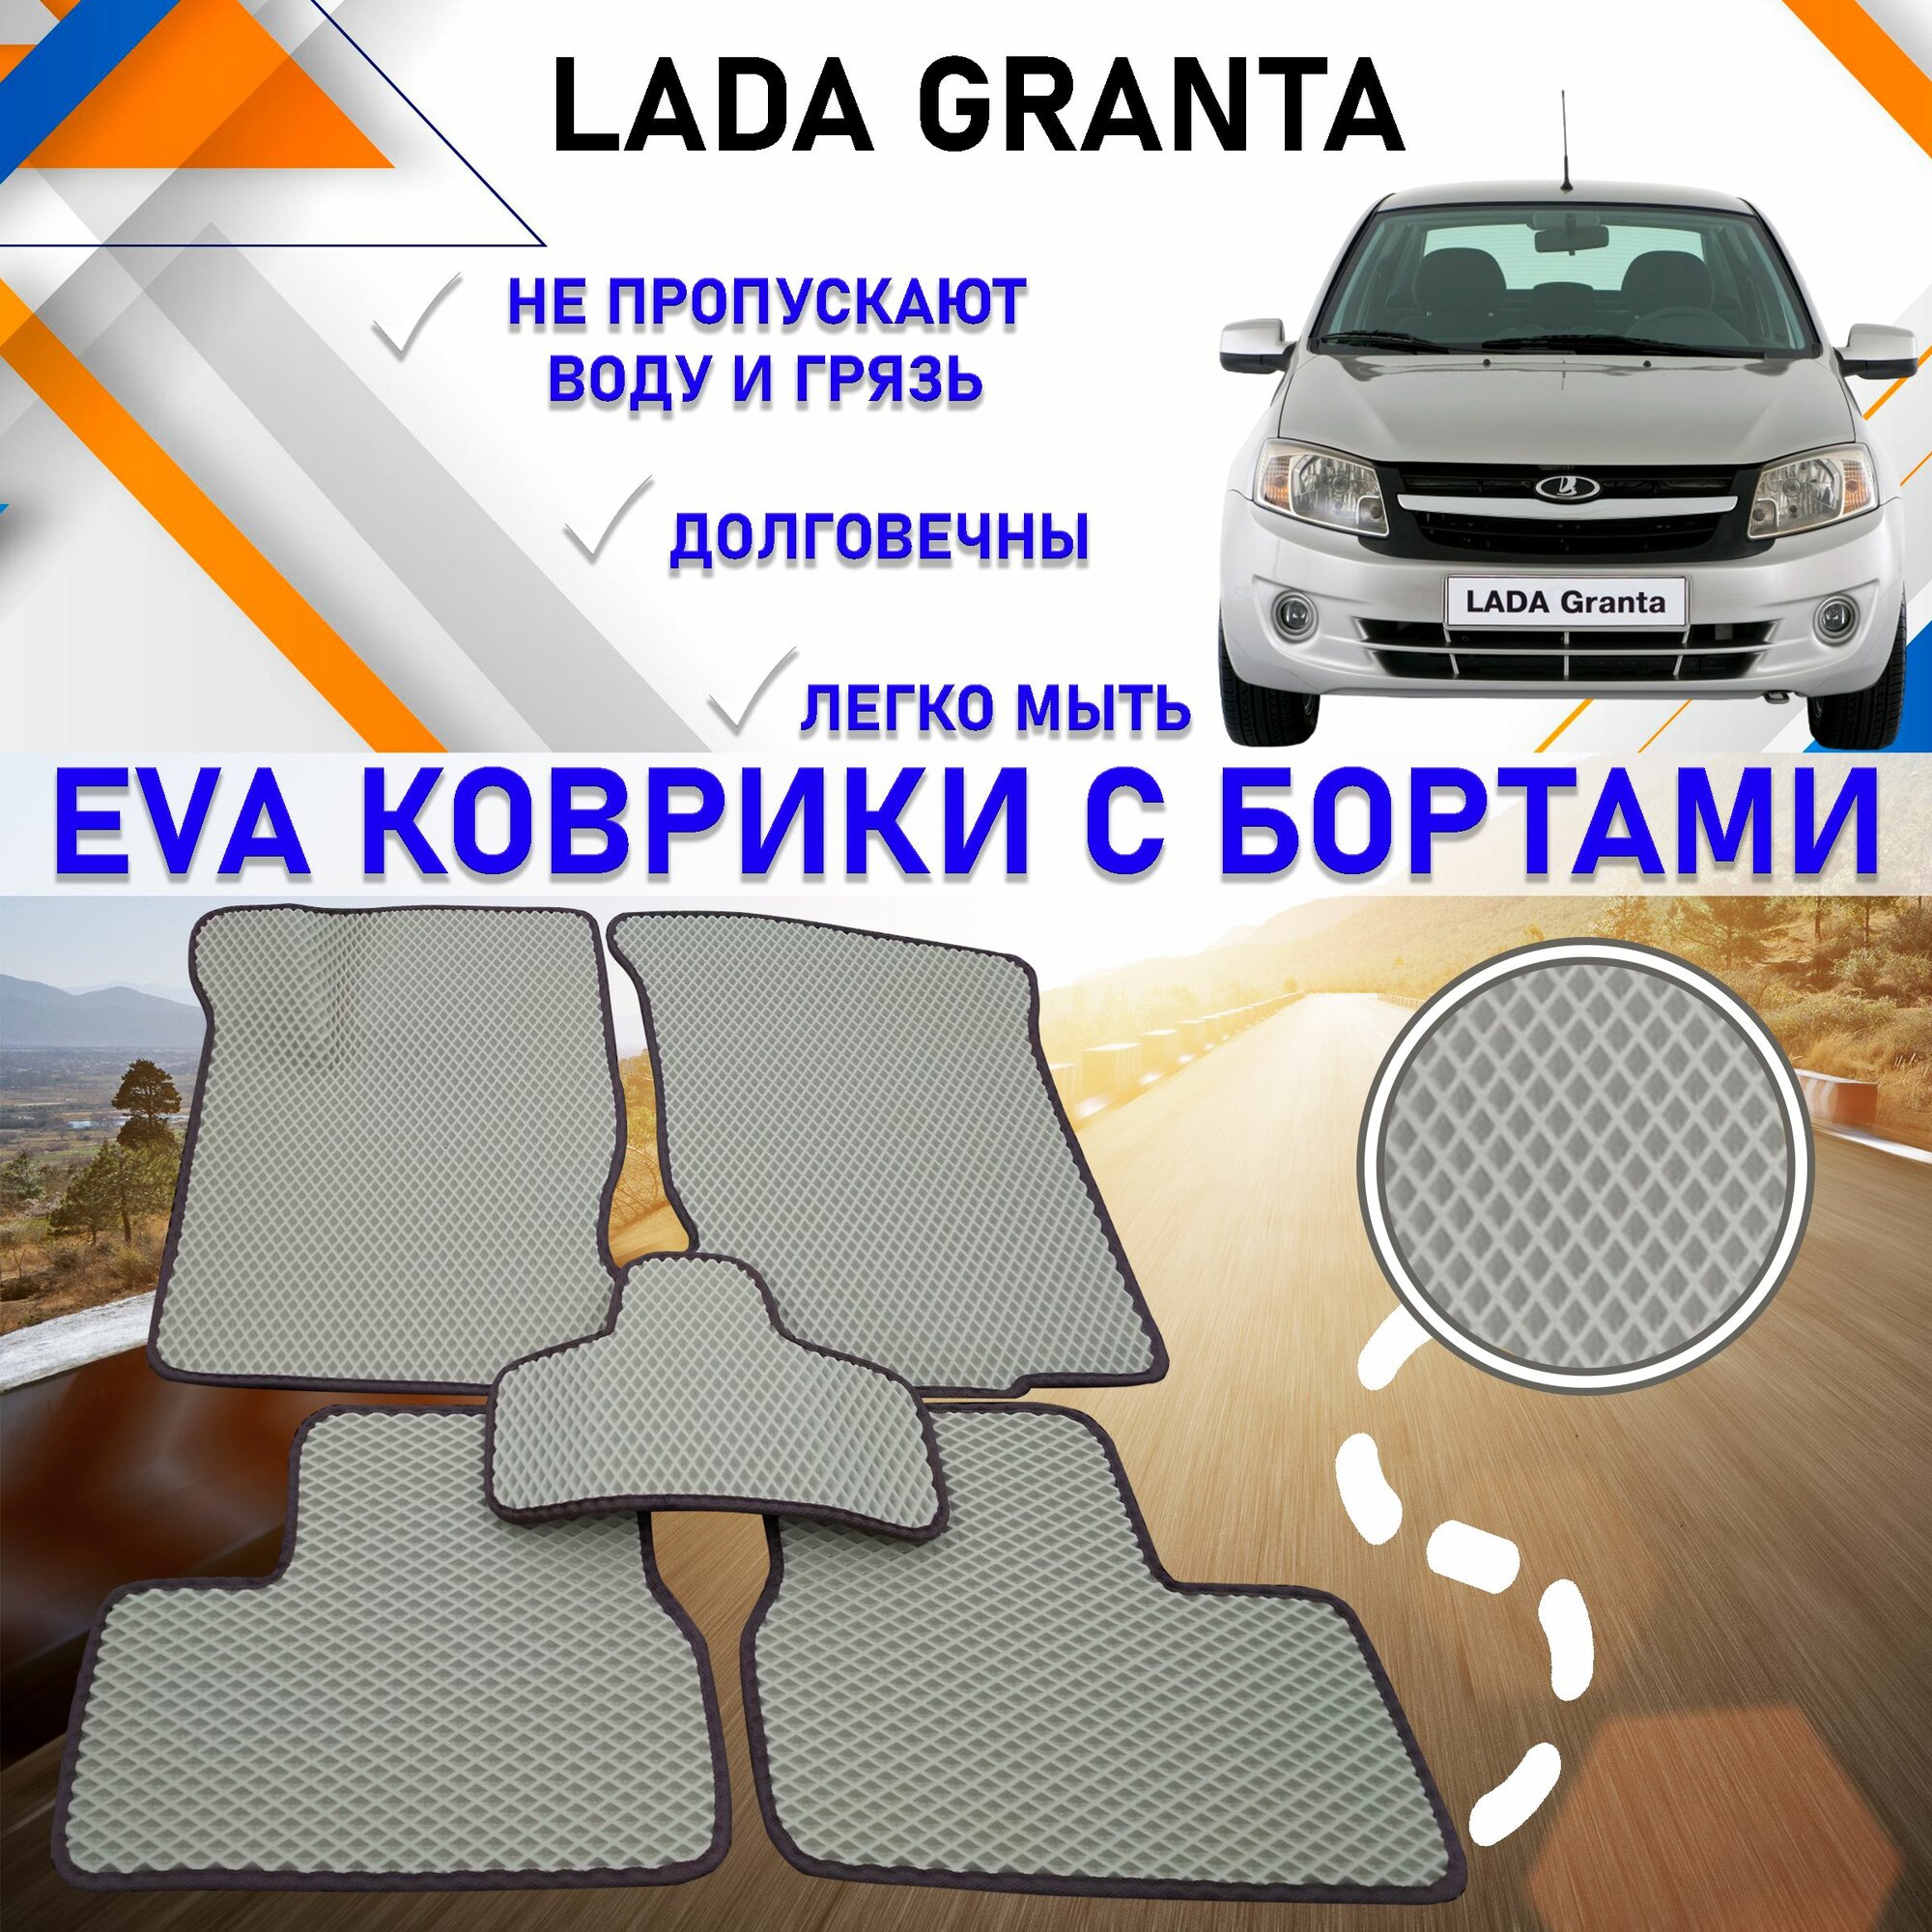 Автомобильные коврики в салон машины с бортами ЕVA EVO ЭВО ЭВА Lada Granta Лада Гранта, резиновый настил для защиты салона авто от грязи и воды